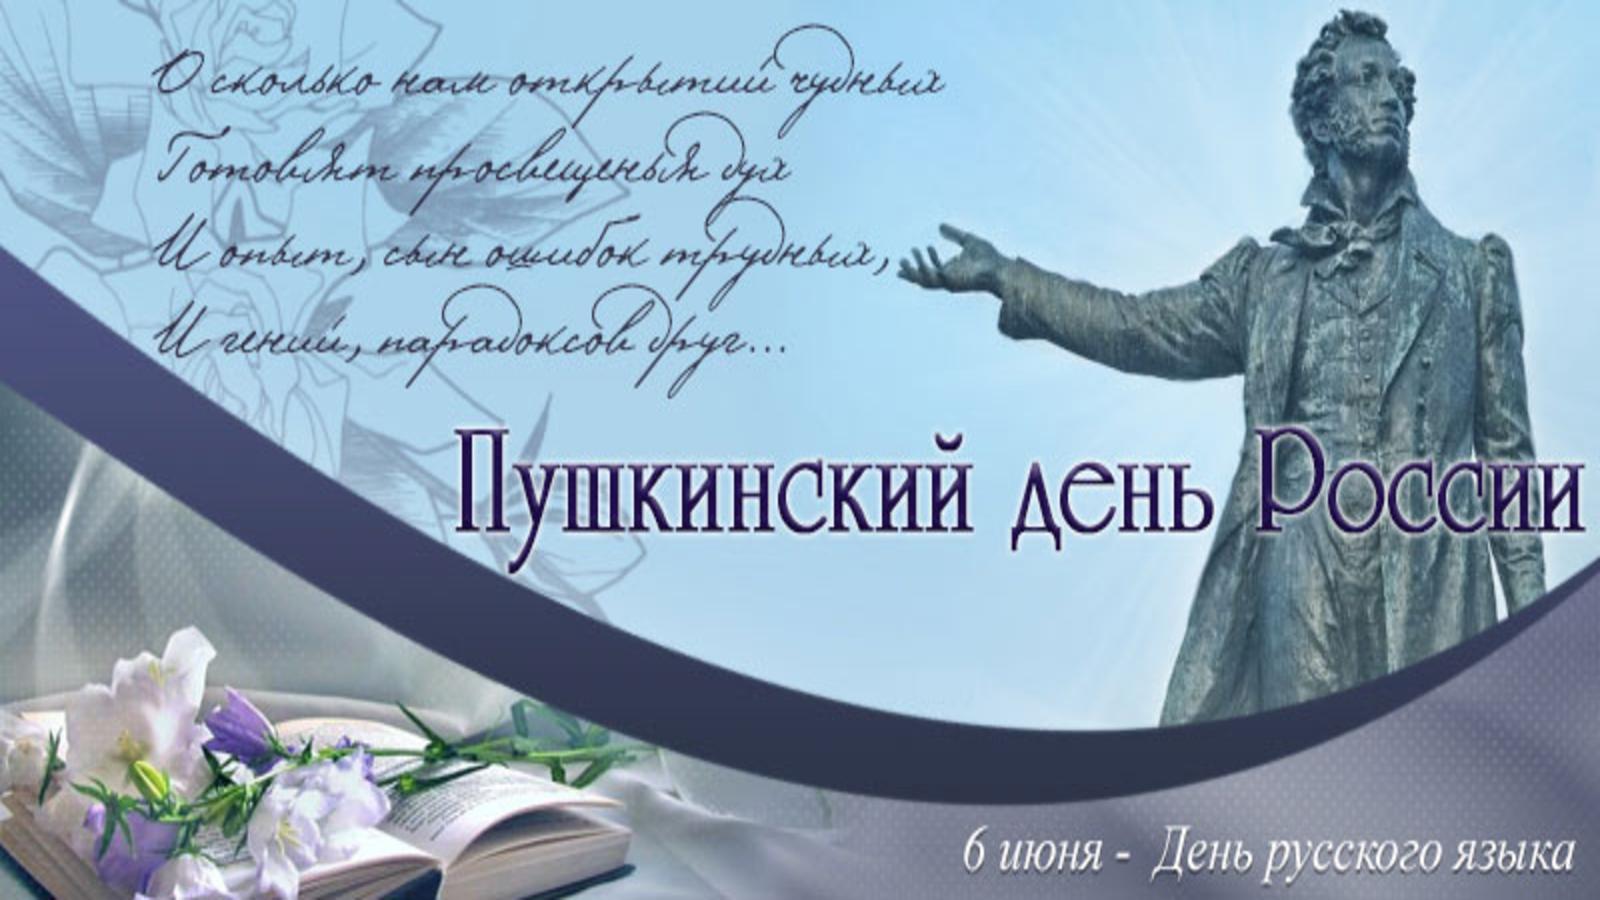 6 Июня день русского языка Пушкинский день России